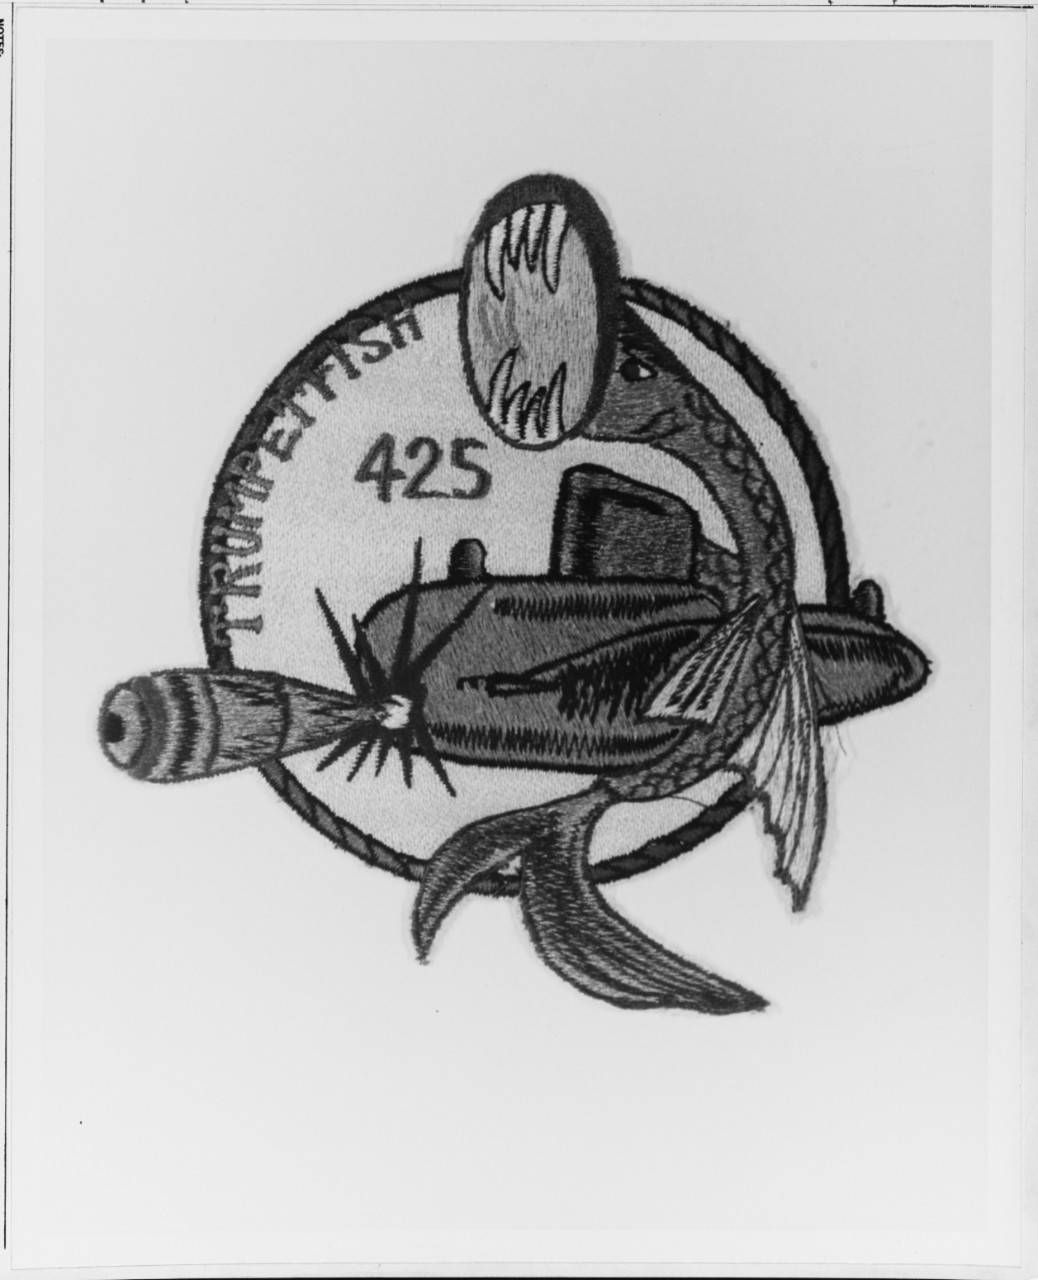 Insignia:  USS TRUMPETFISH (SS-425)